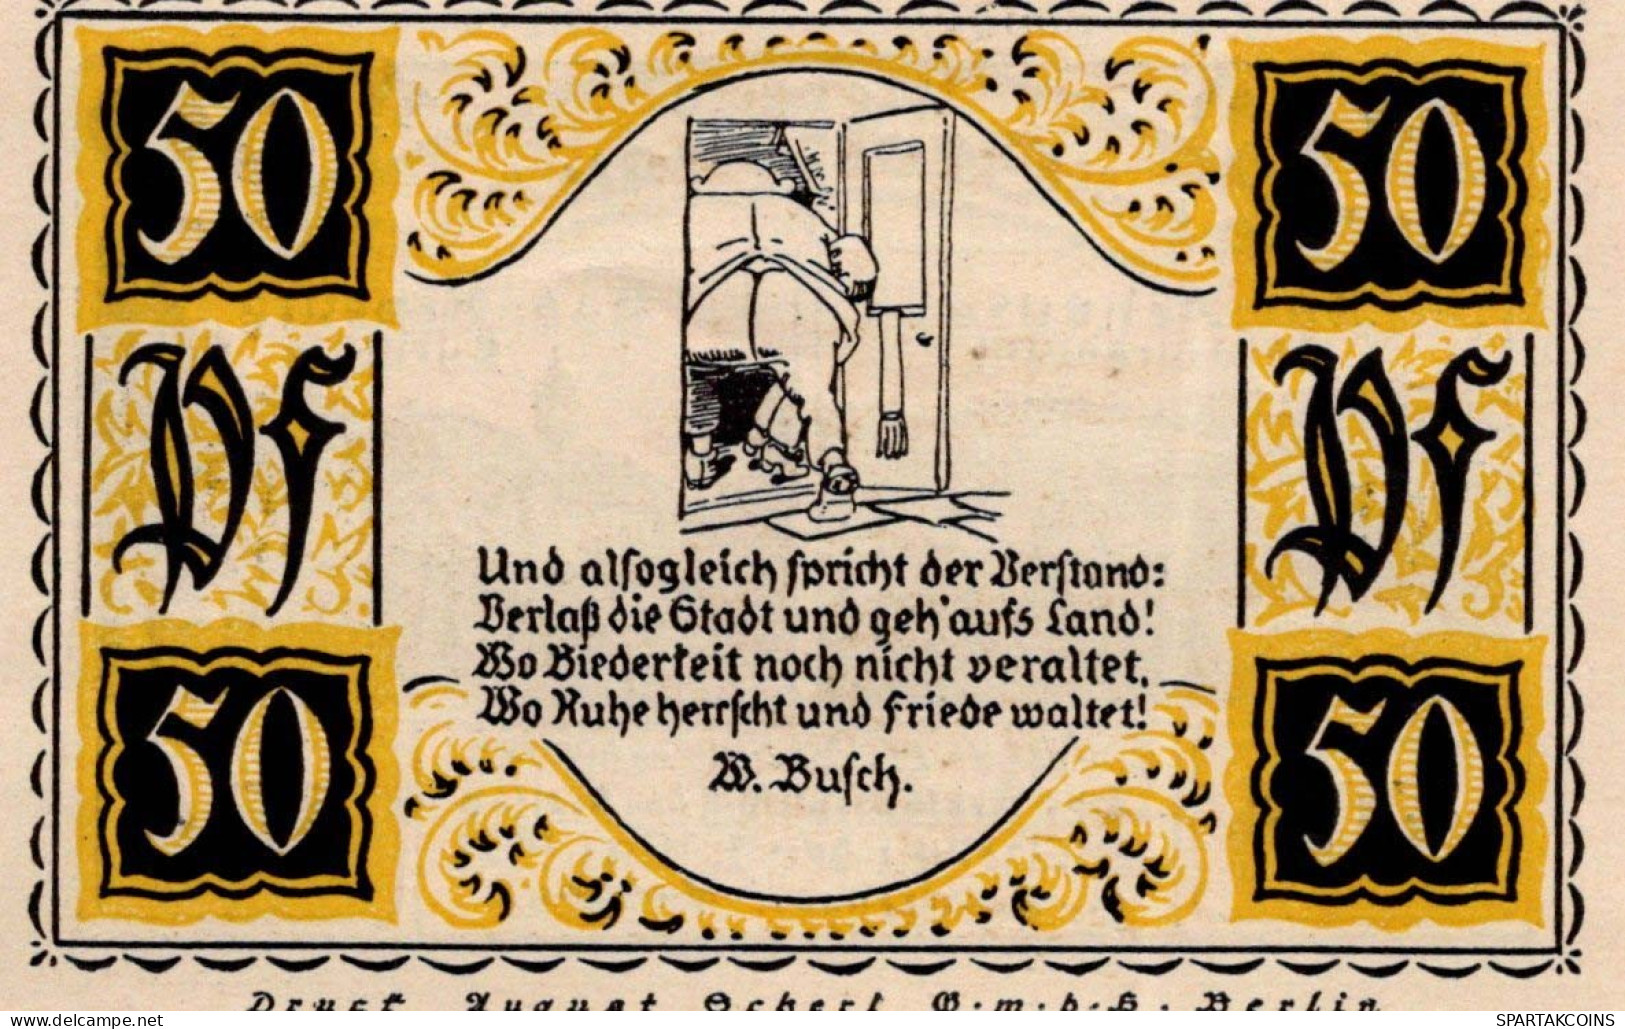 50 PFENNIG 1921 Stadt STOLZENAU Hanover DEUTSCHLAND Notgeld Banknote #PG211 - [11] Emissions Locales